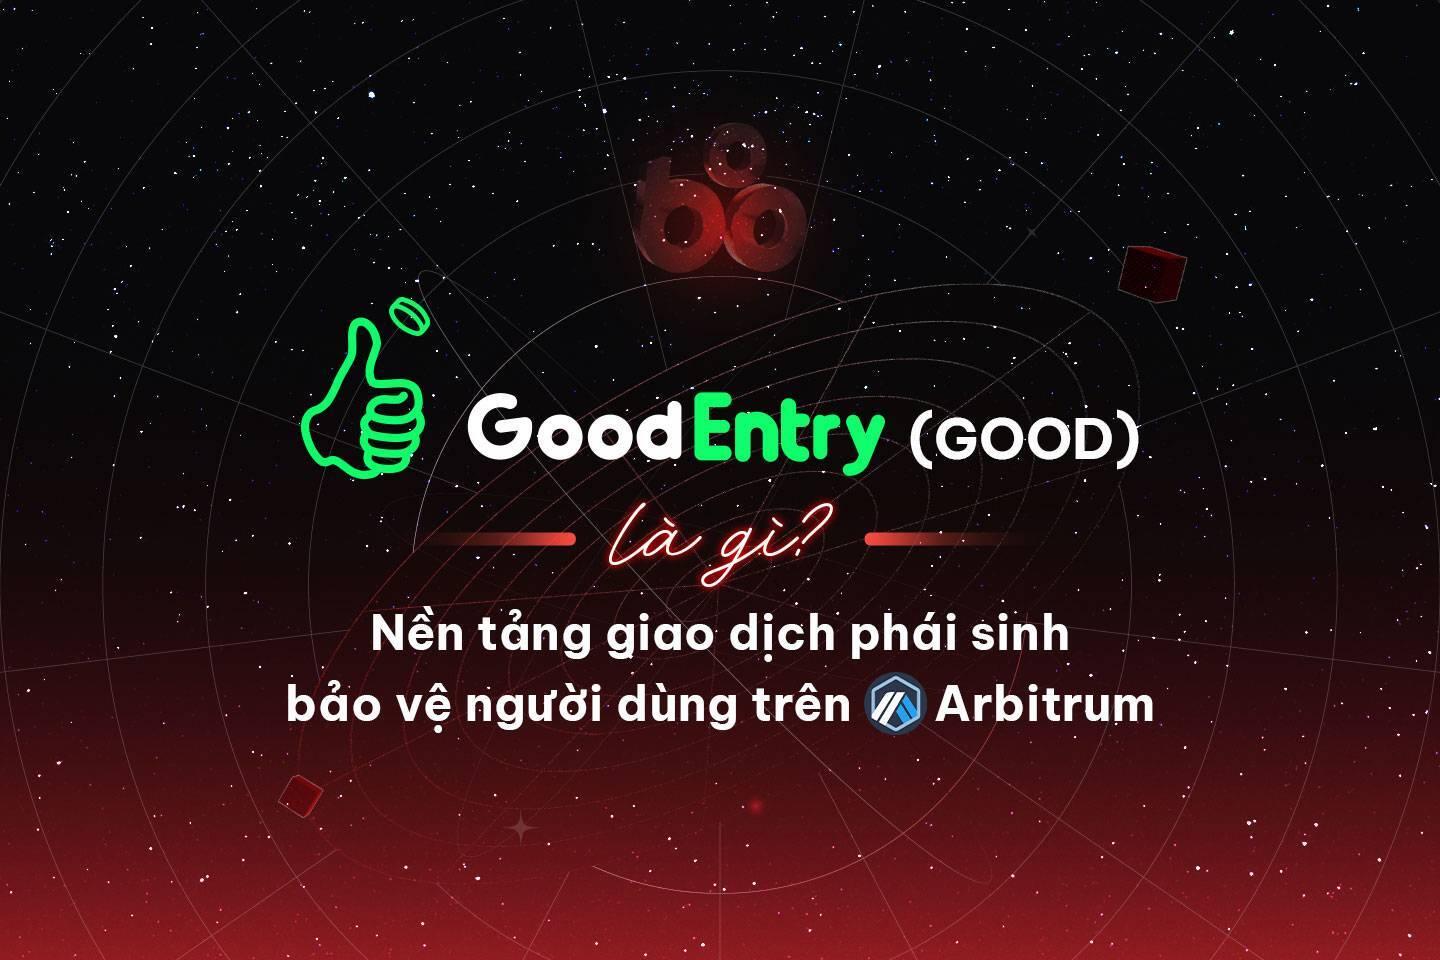 good-entry-good-la-gi-nen-tang-giao-dich-phai-sinh-bao-ve-nguoi-dung-tren-arbitrum